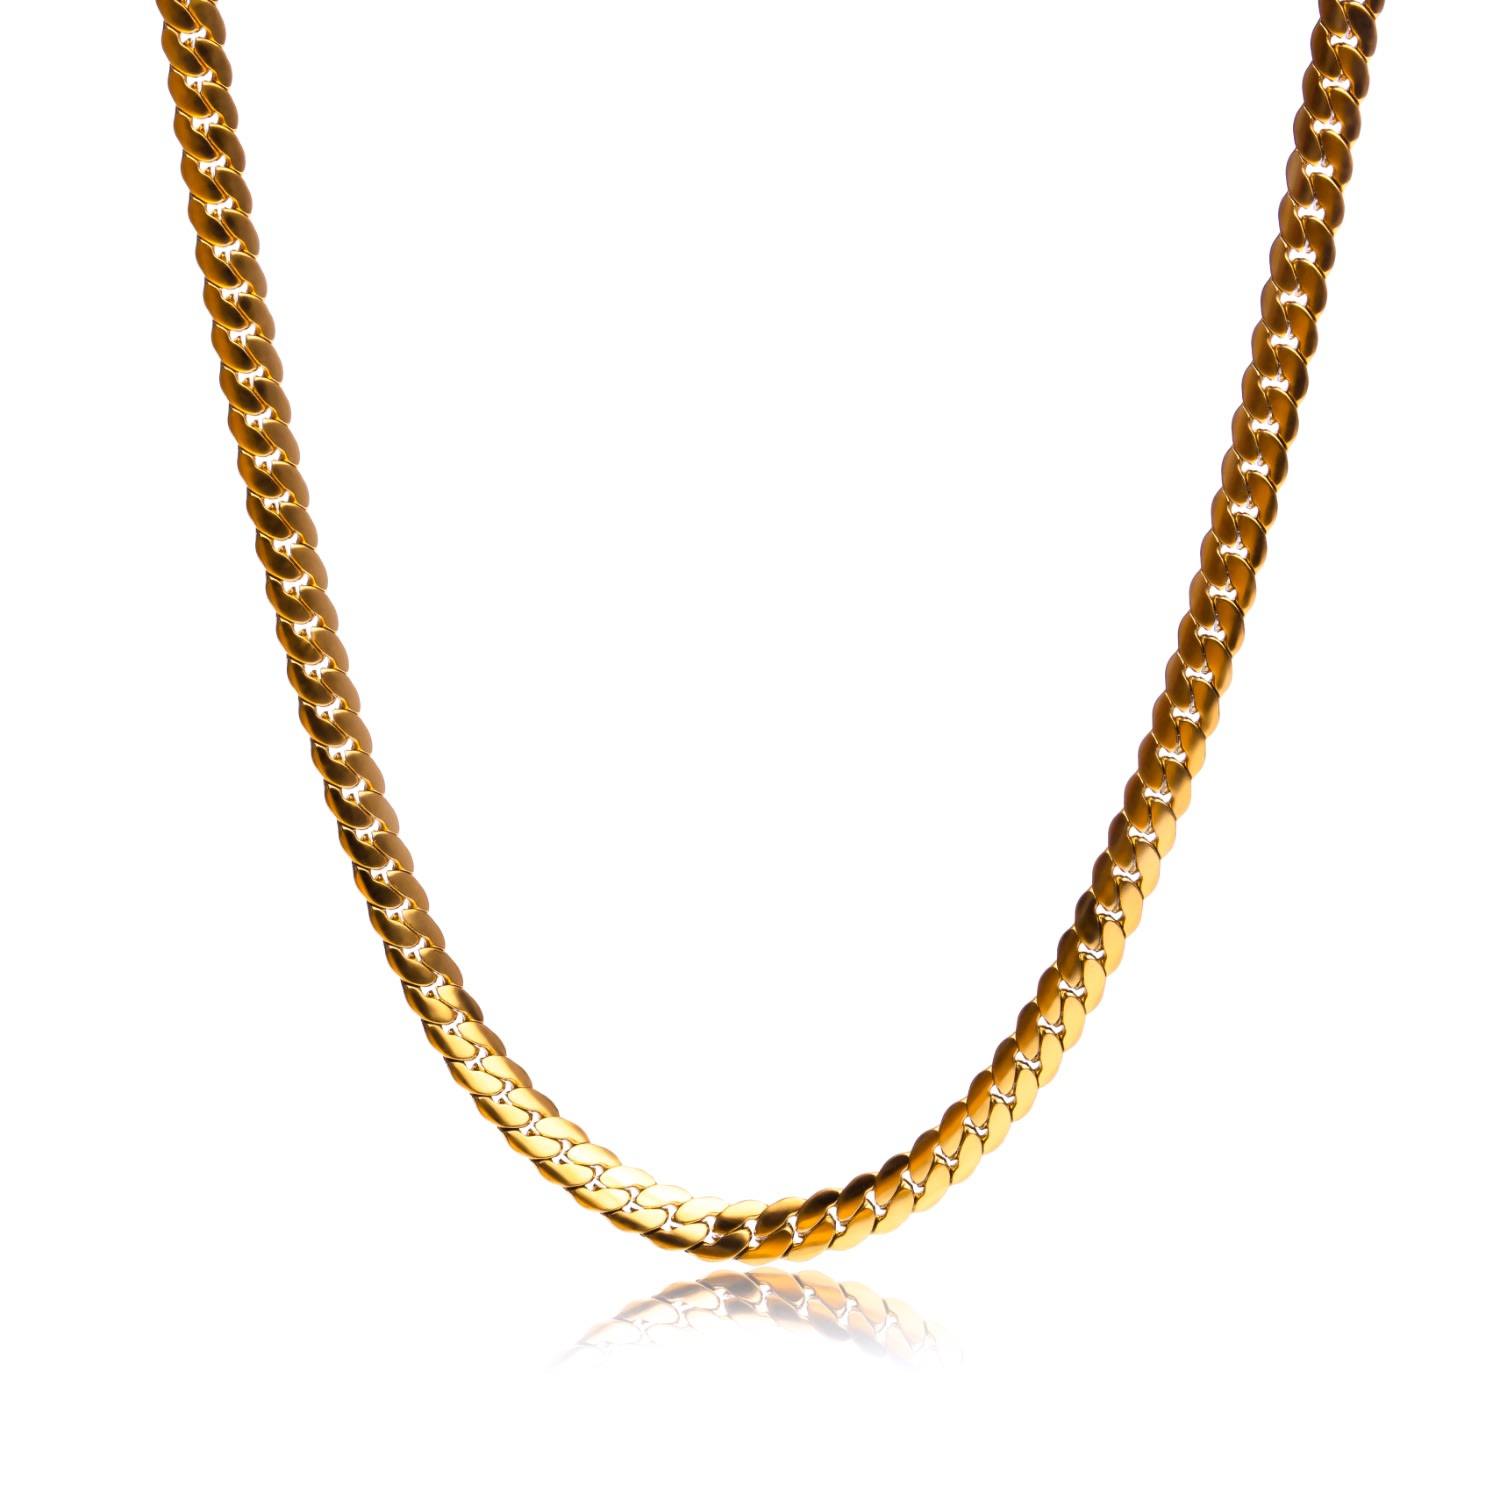 Tseatjewelry Women's Gold Sneak Chain Necklace